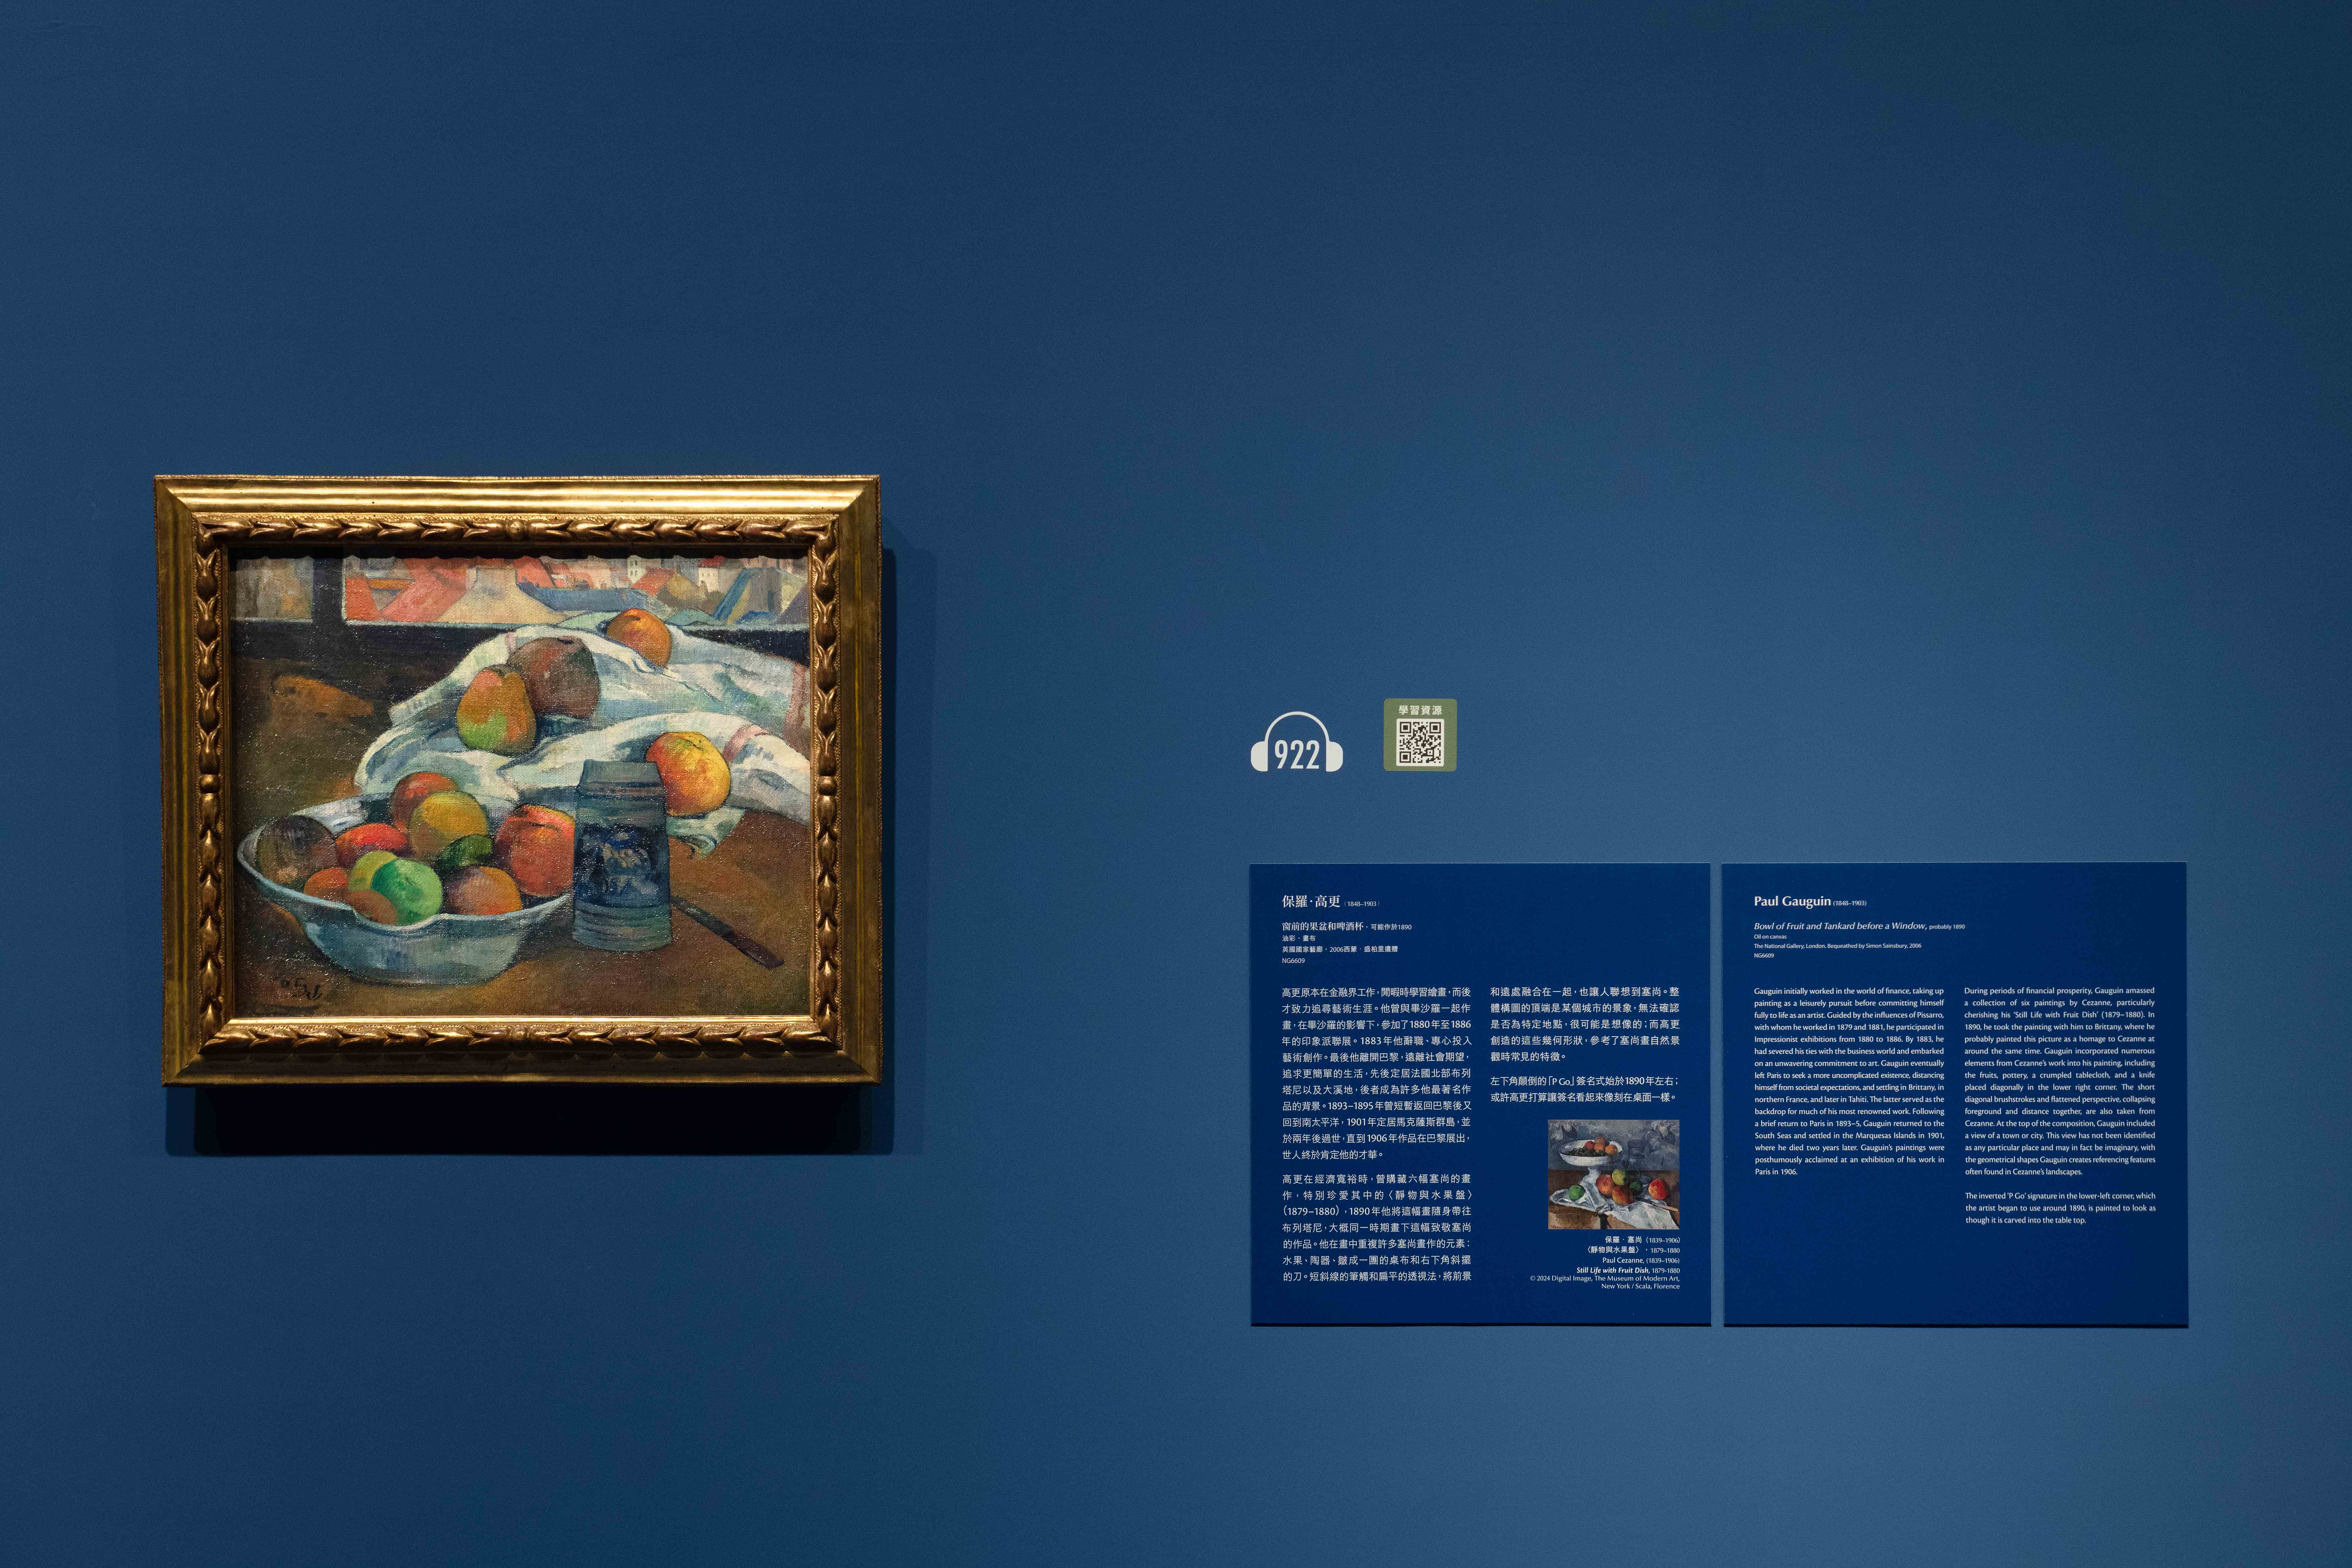 奇 美 博 物 館 《 英 國 國 家 藝 廊 珍 藏 展 》 第 四 單 元 「 光 線 與 色 彩 ： 印 象 派 繪 畫 」   - 保 羅 ． 高 更   （ 1 8 4 8 - 1 9 0 3 ） 作 品 〈 窗 前 的 果 盆 和 啤 酒 杯 〉 ， 可 能 於 1 8 9 0 年 創 作 。 圖 / 奇 美 博 物 館 提 供 